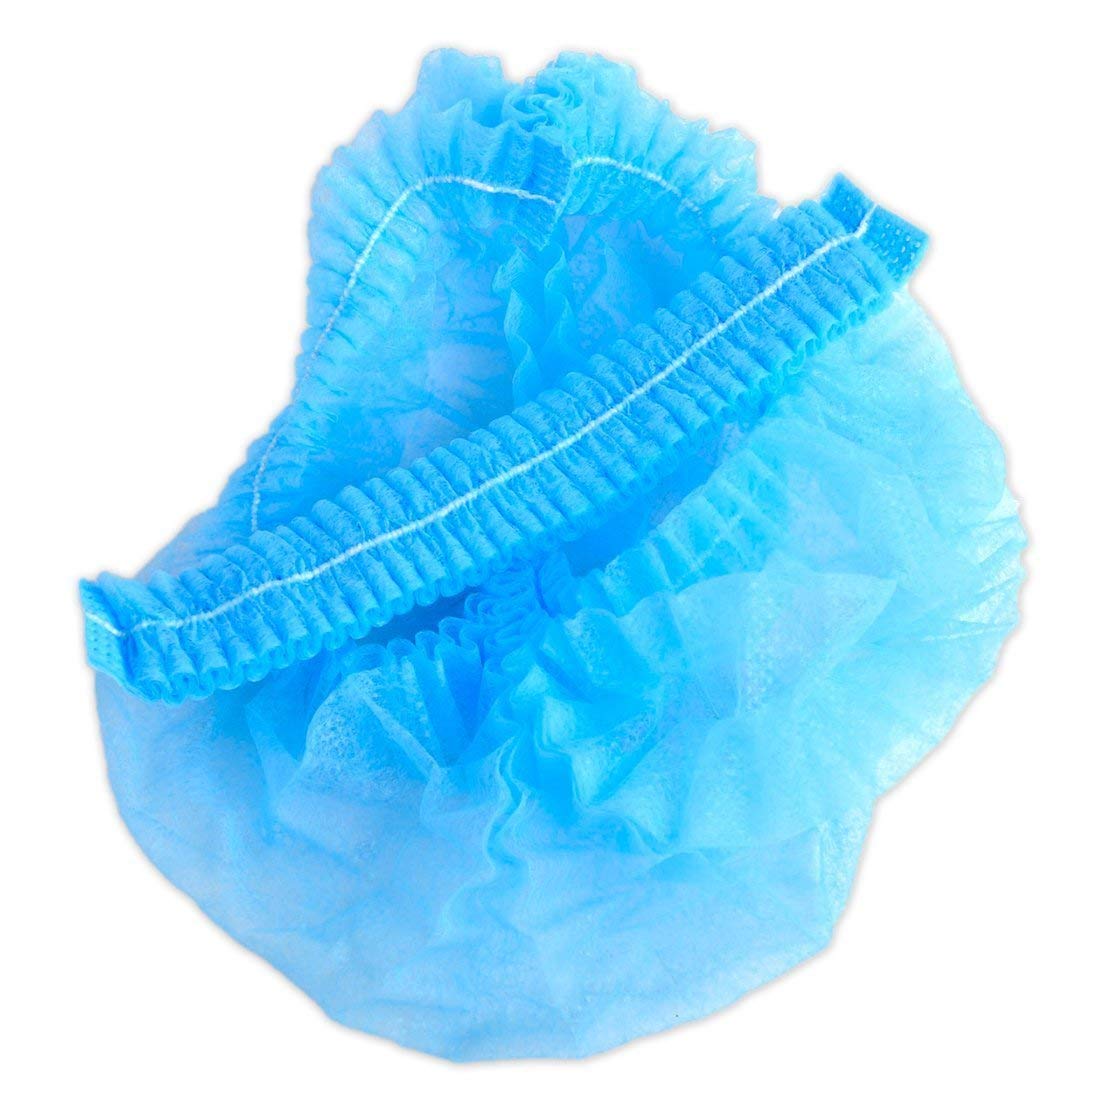 Disposable Hair Cap Stretchable Blue Bouffant Caps/Surgical Caps/Cooking Caps (100 Pcs)